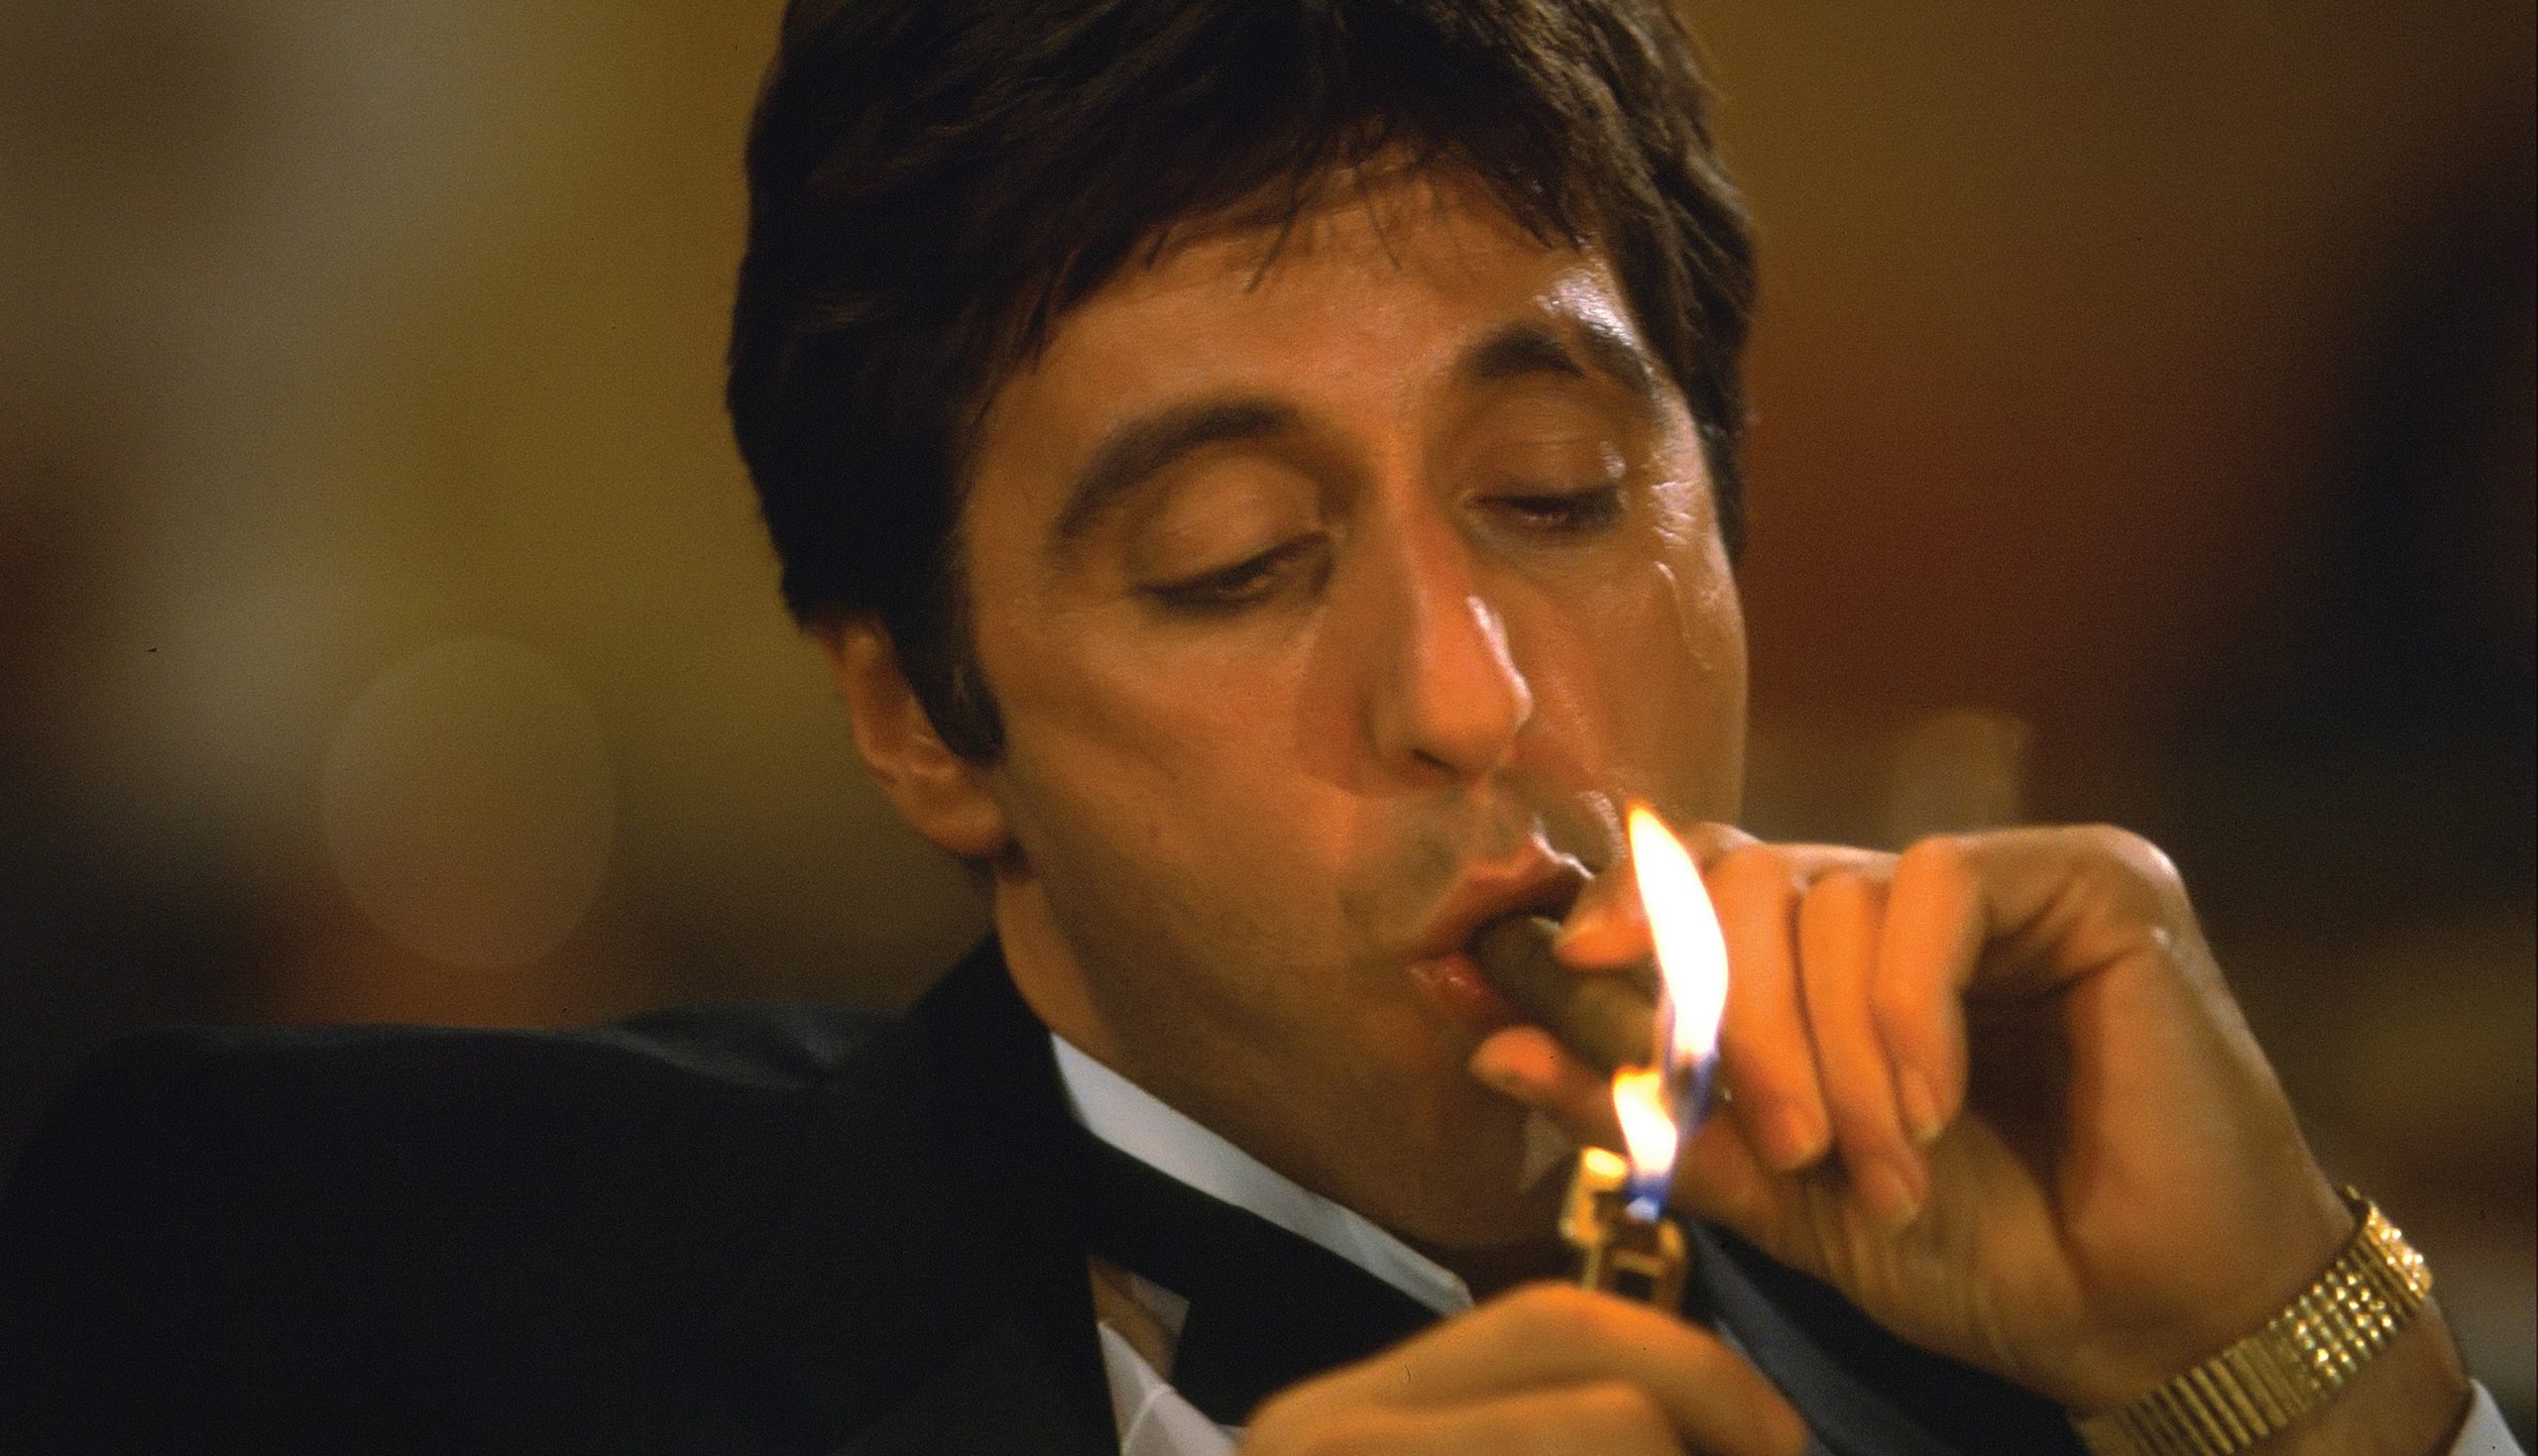 Al-Pacino-smoking-cigar-scaled.jpg